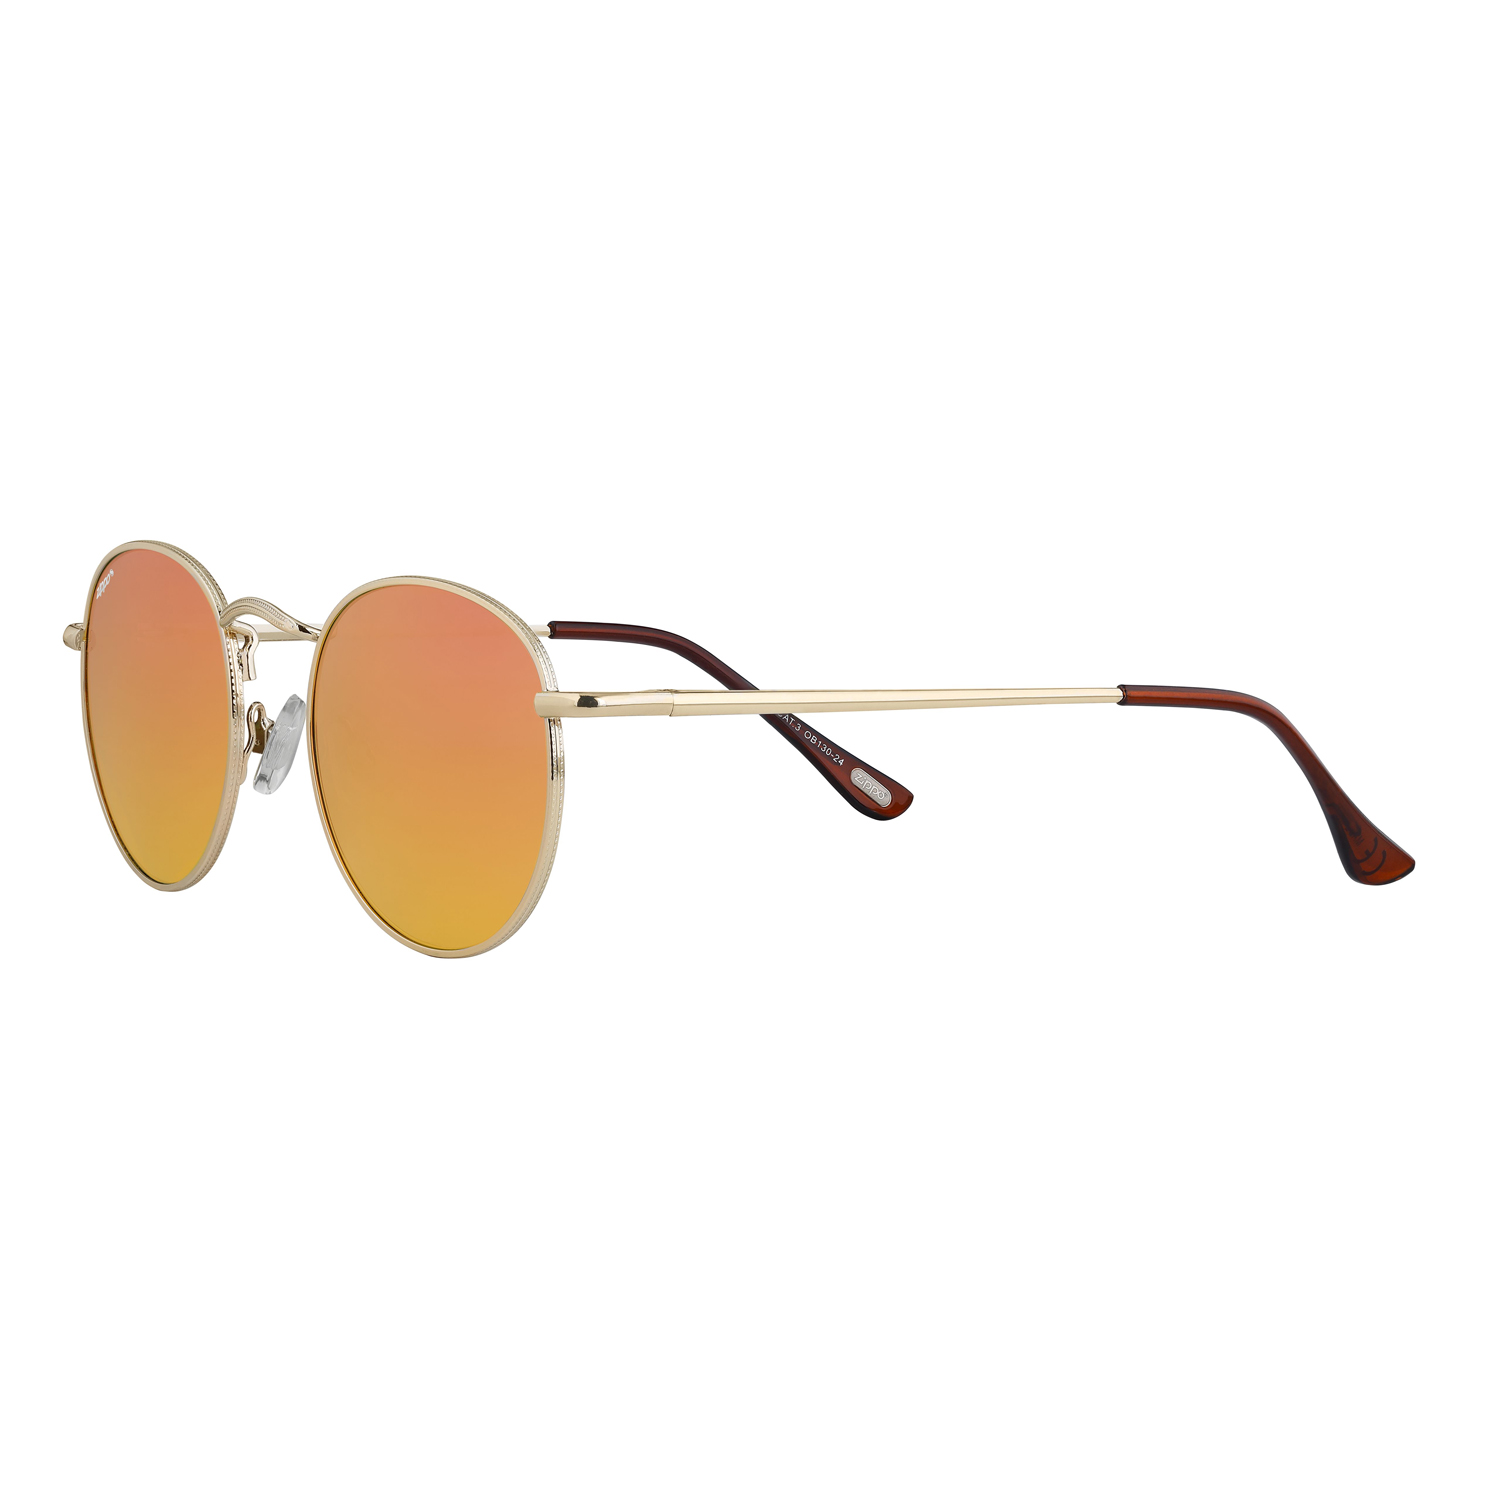 Солнцезащитные очки унисекс Zippo OB130 золотистые